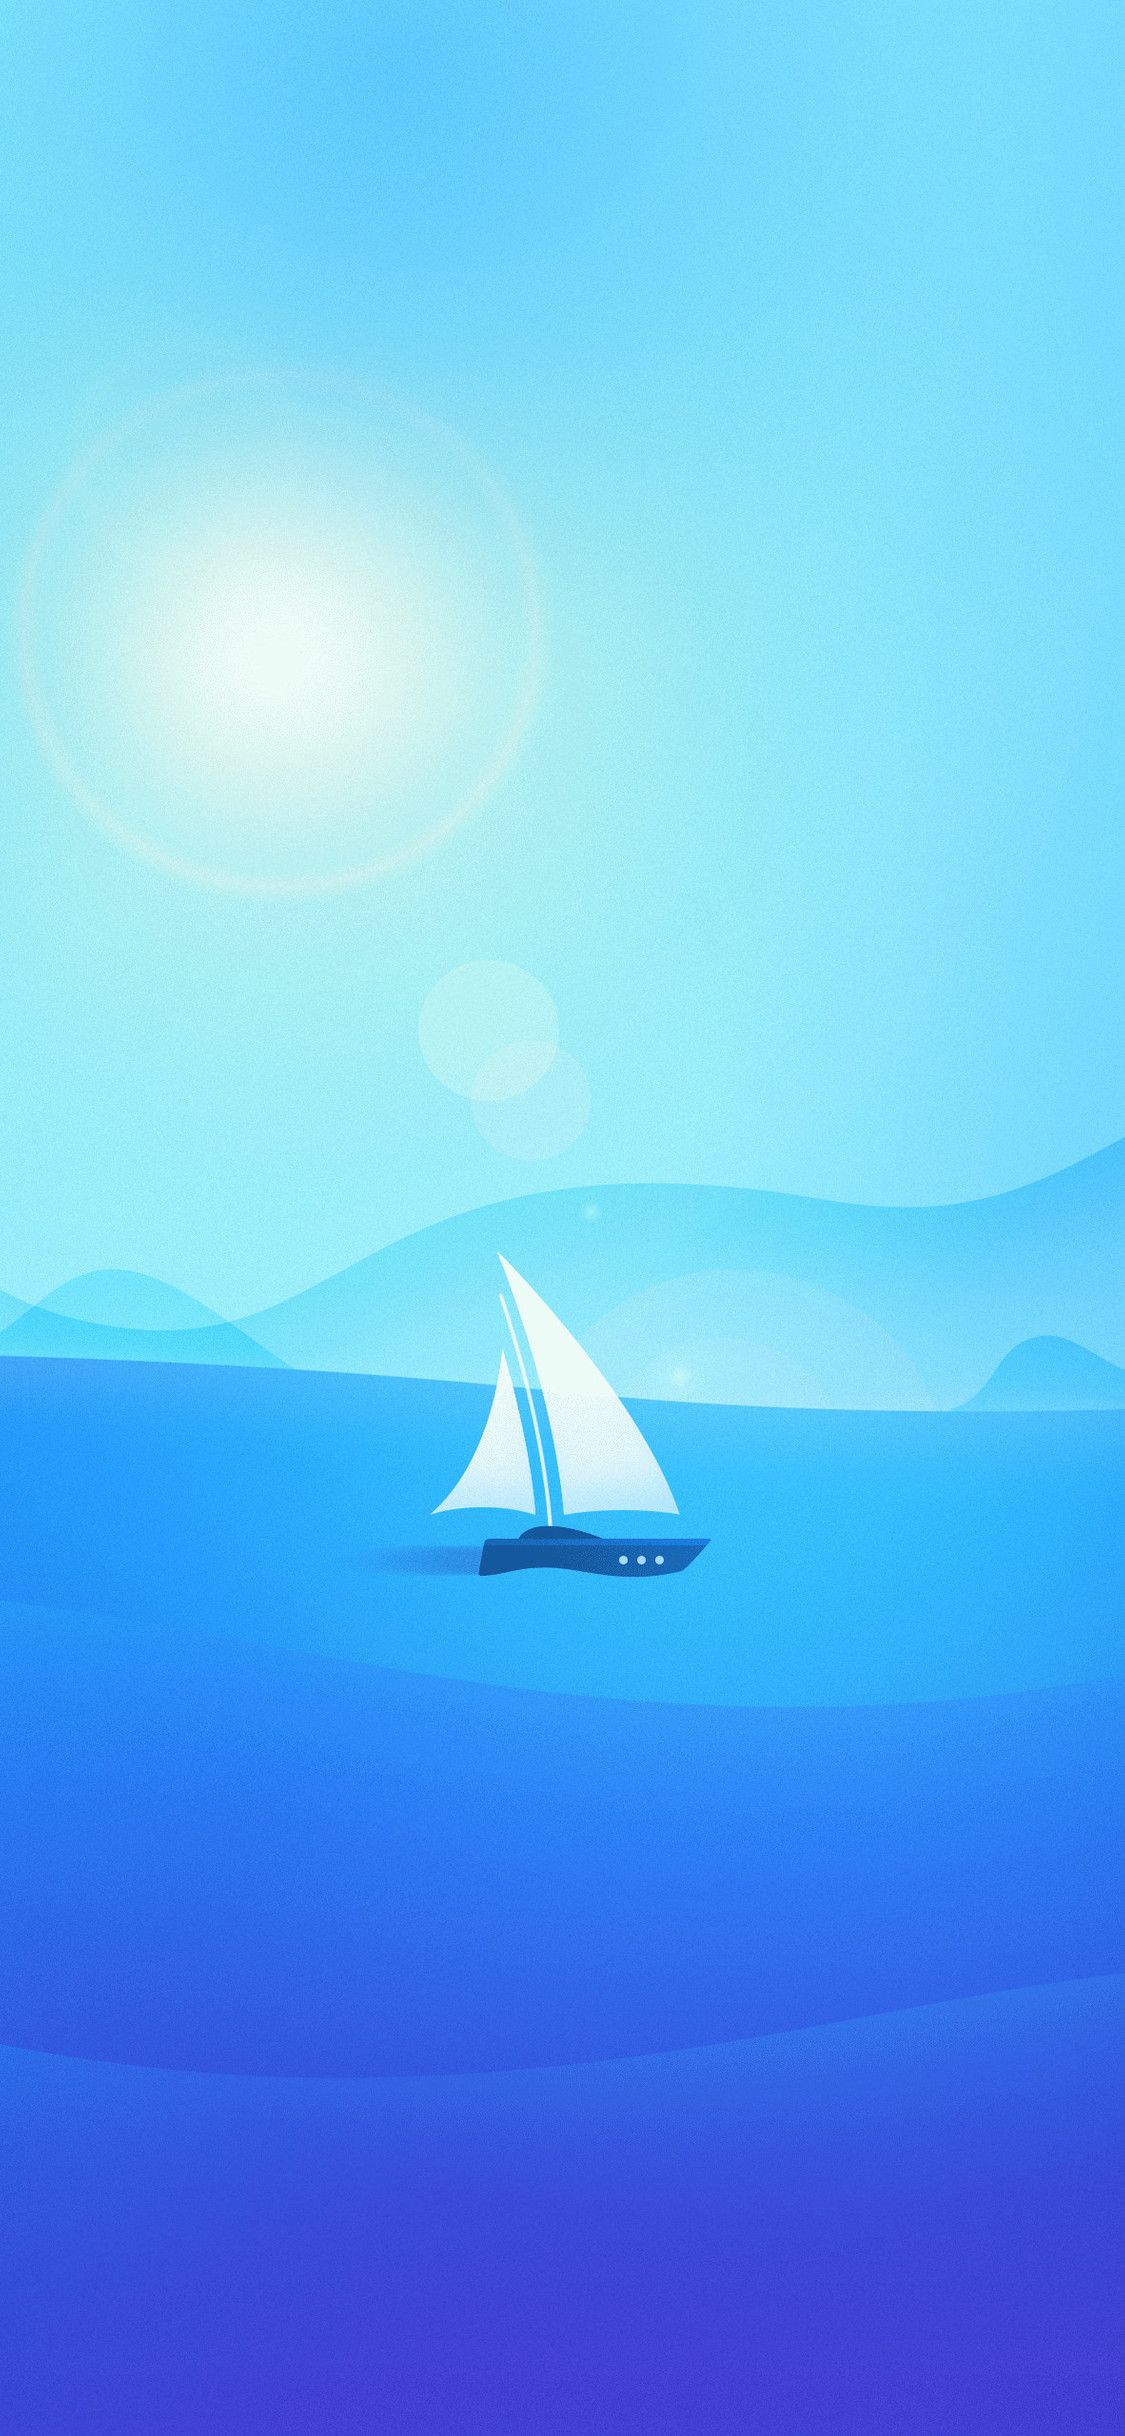 بک گراند جذاب گوشی های اندرویدی با نقاشی قایق و دریا آبی رنگ